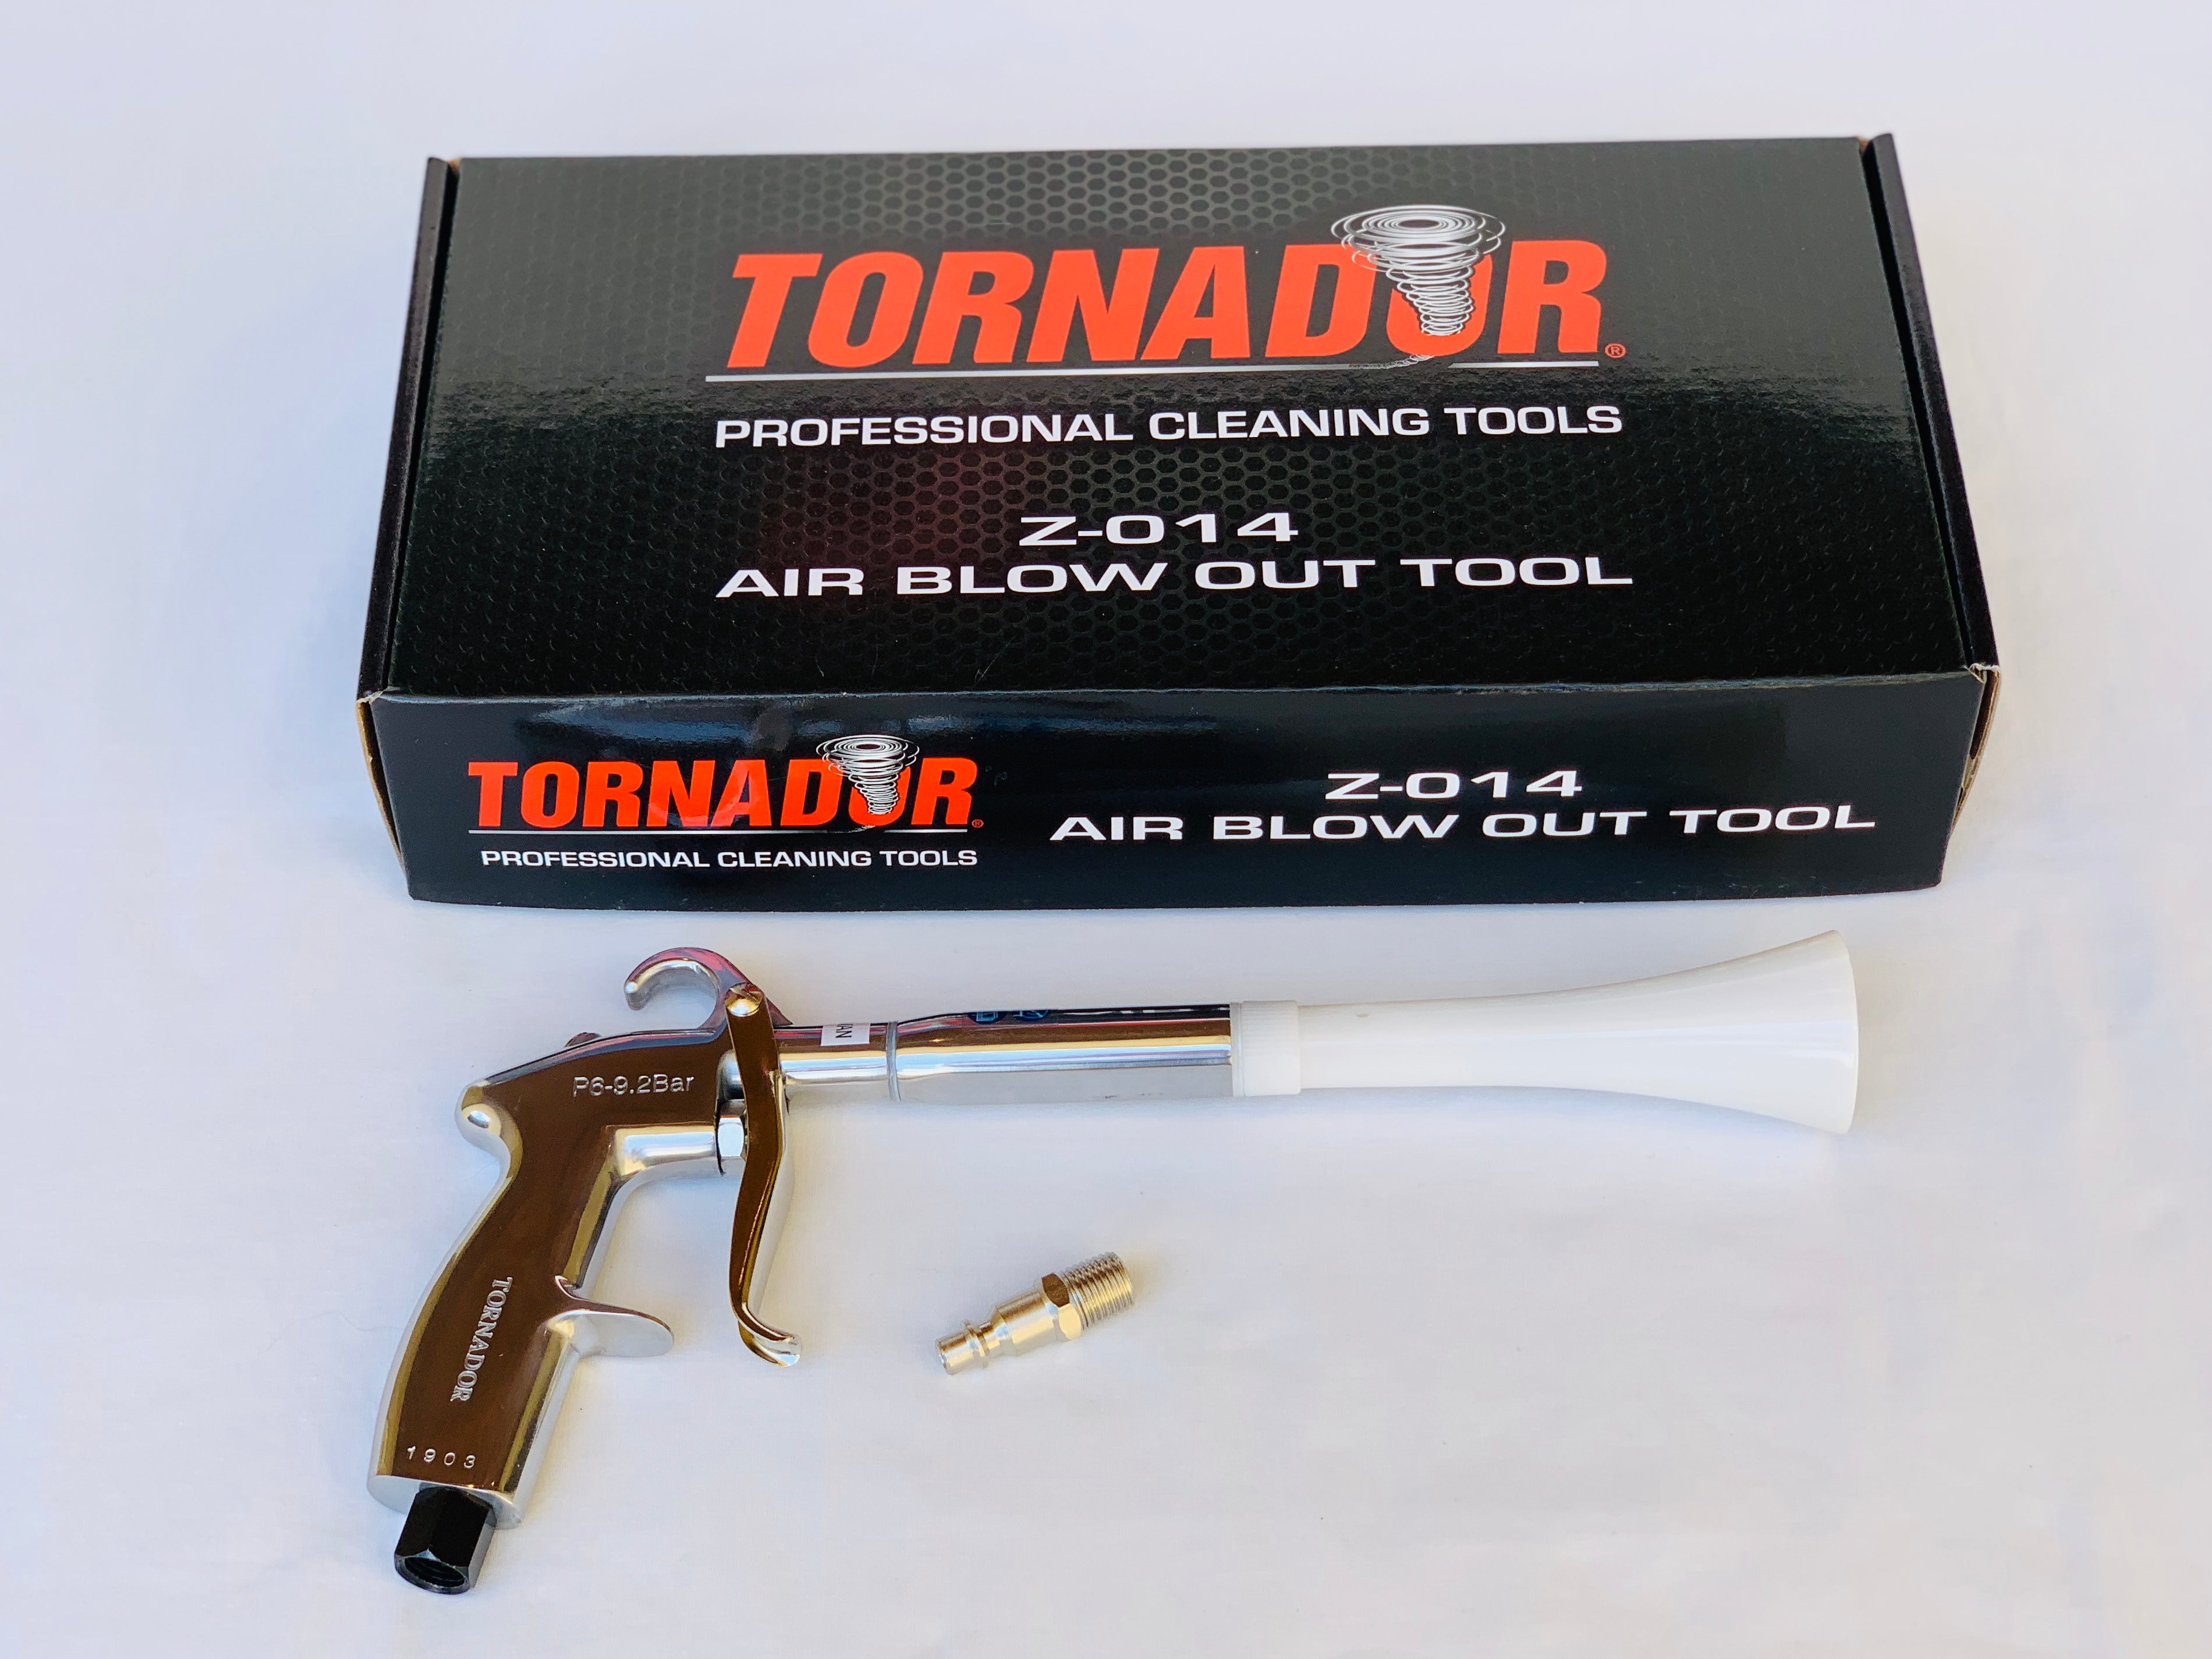 Z-014 Tornador® Air Blow Out Tool – Tornador Tools